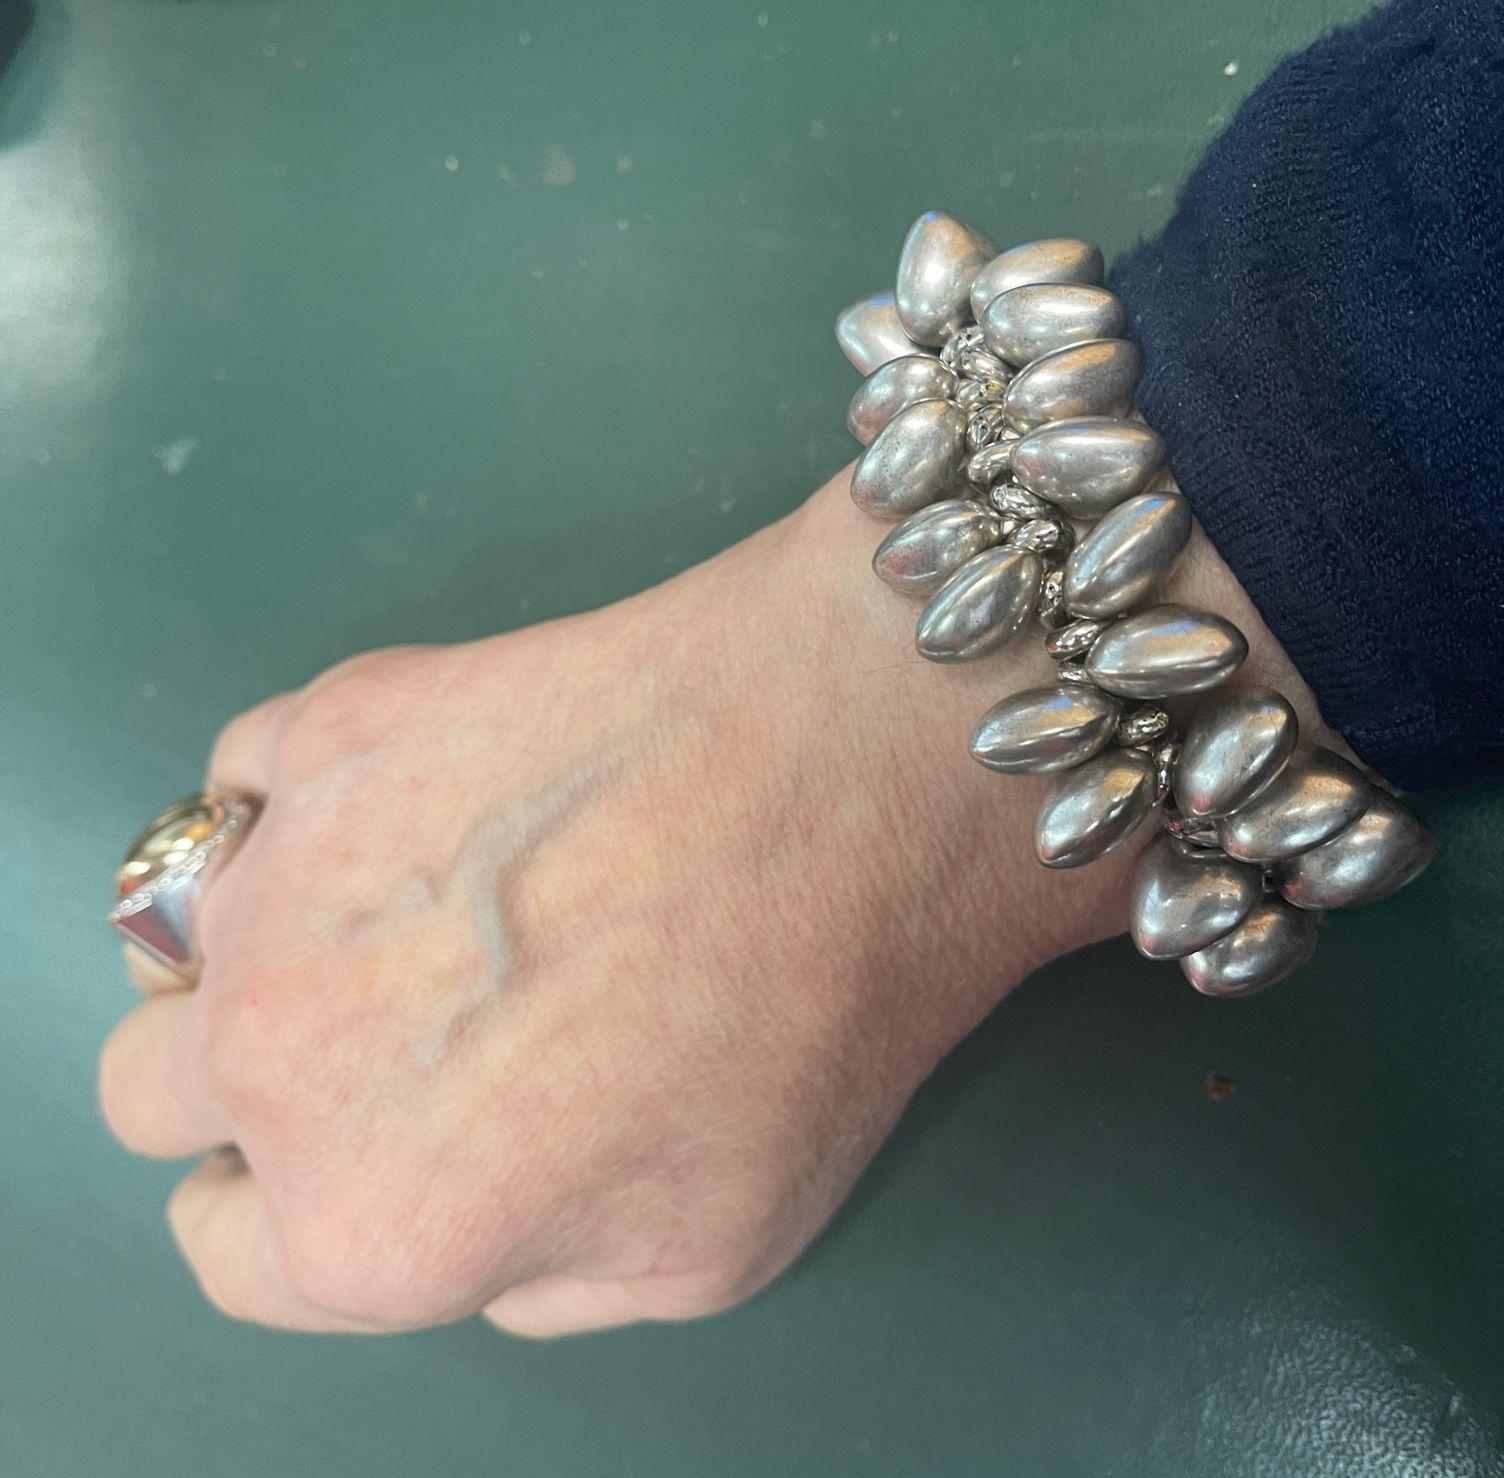 Women's Continuous Loving Hearts Silver Bracelet